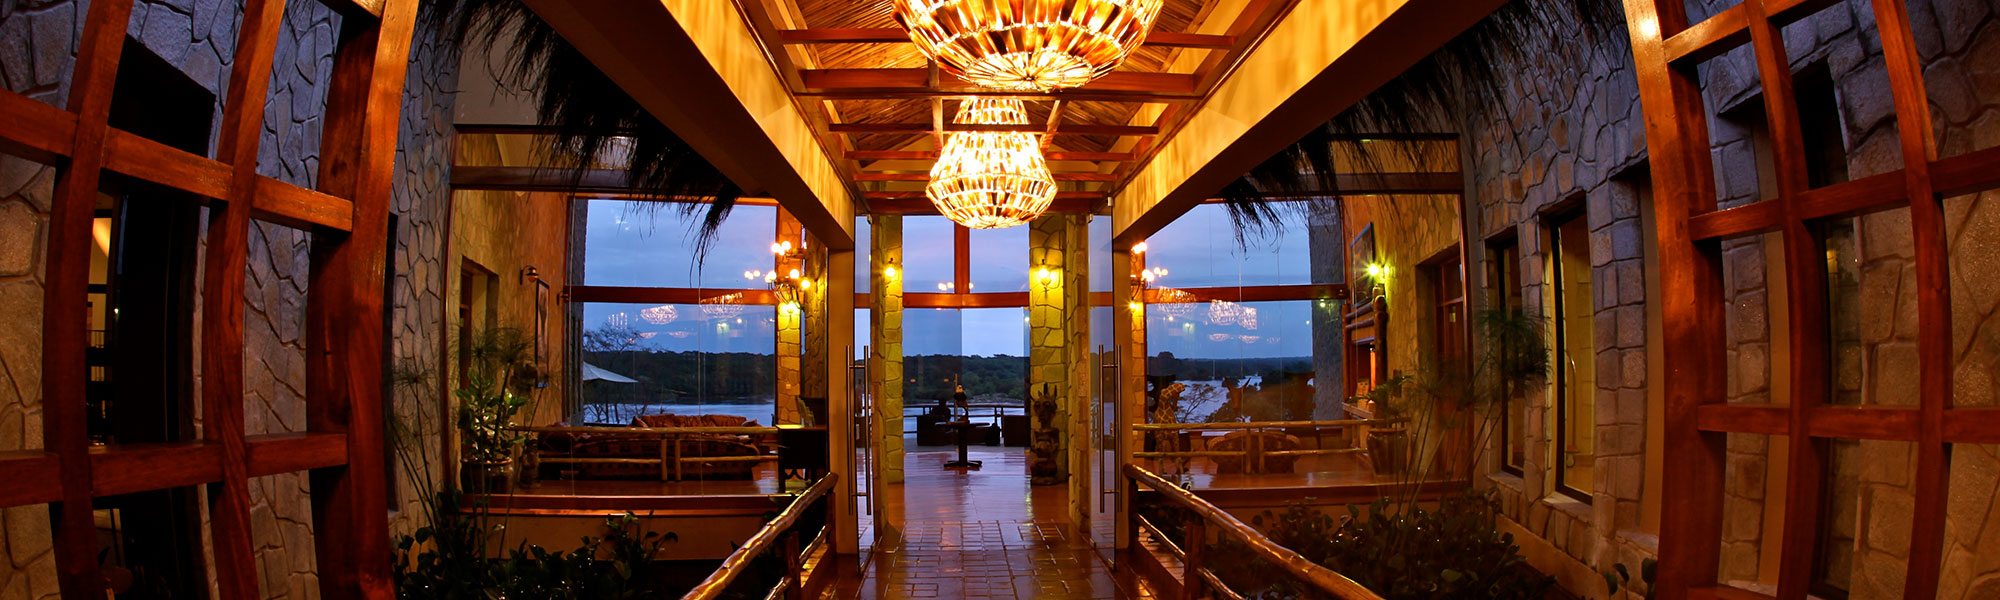 uganda luxury safary lodge